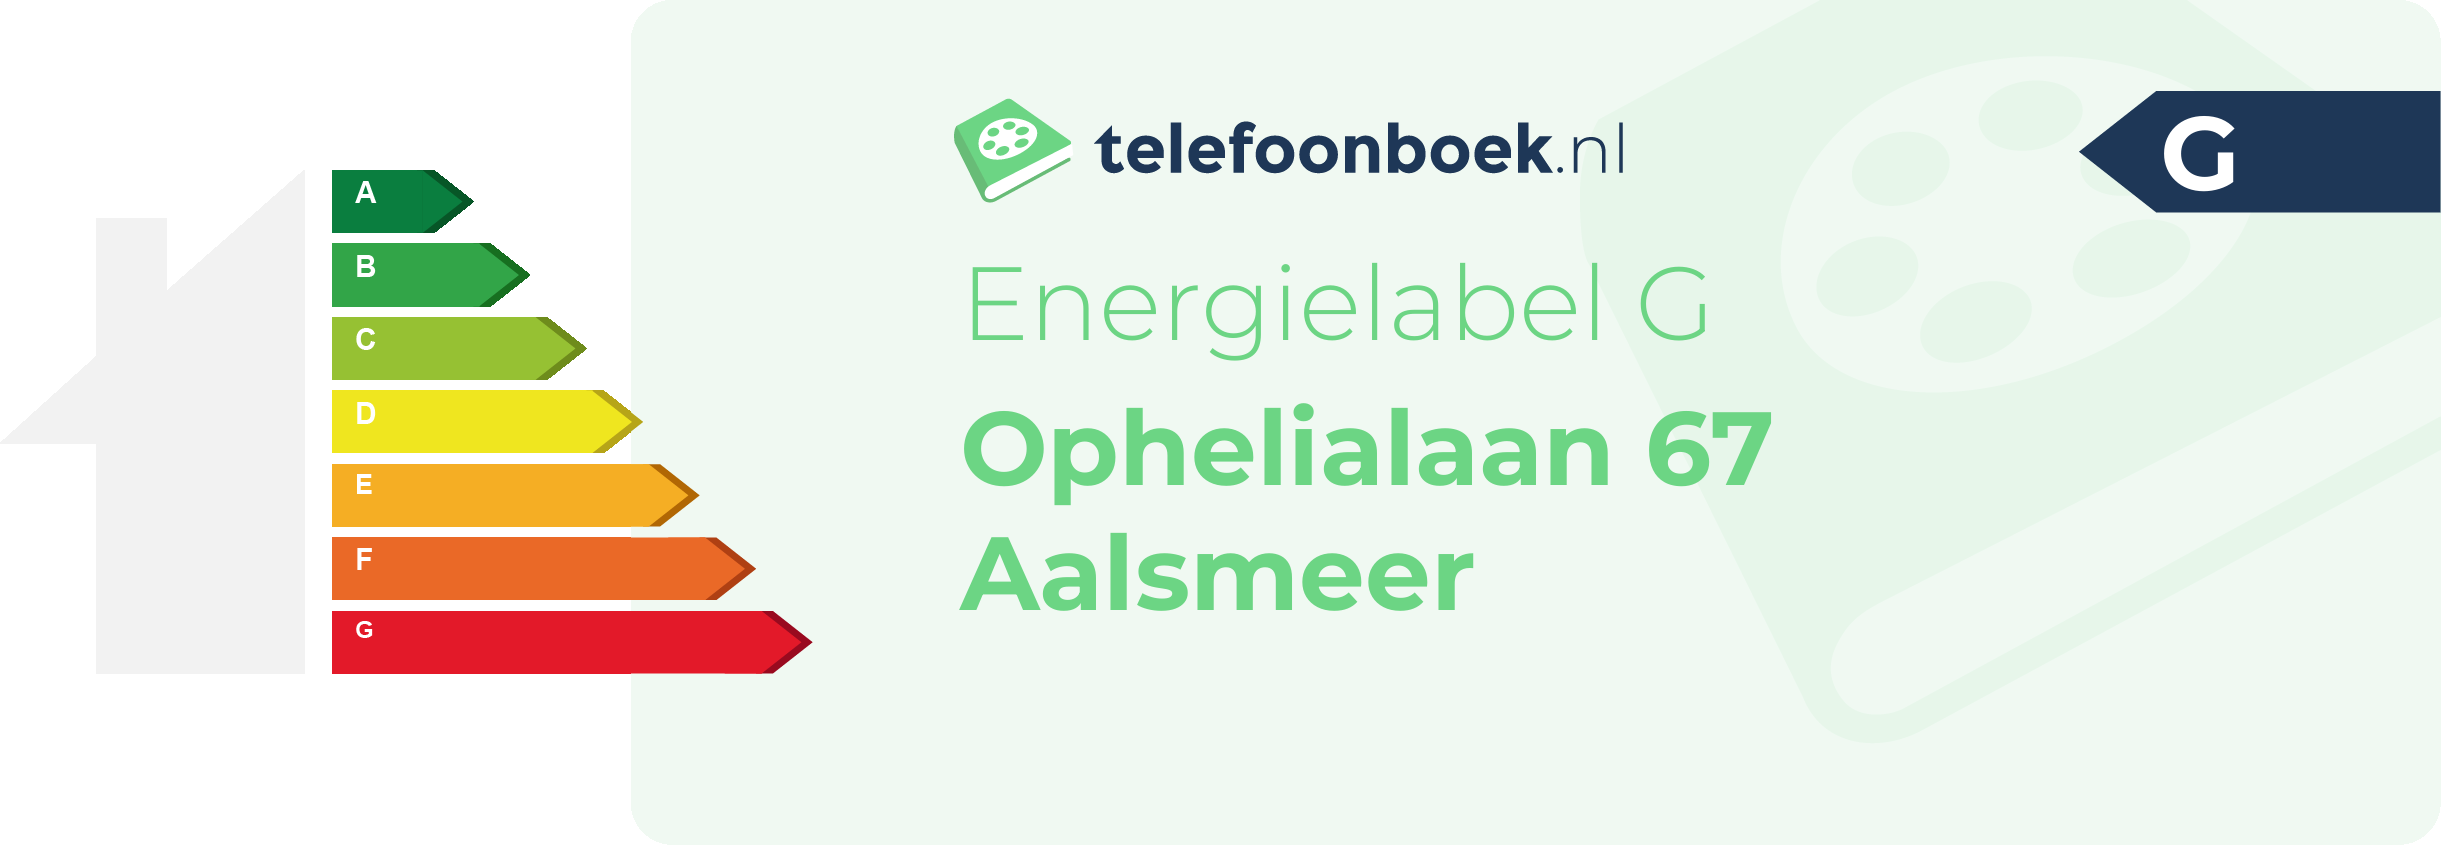 Energielabel Ophelialaan 67 Aalsmeer